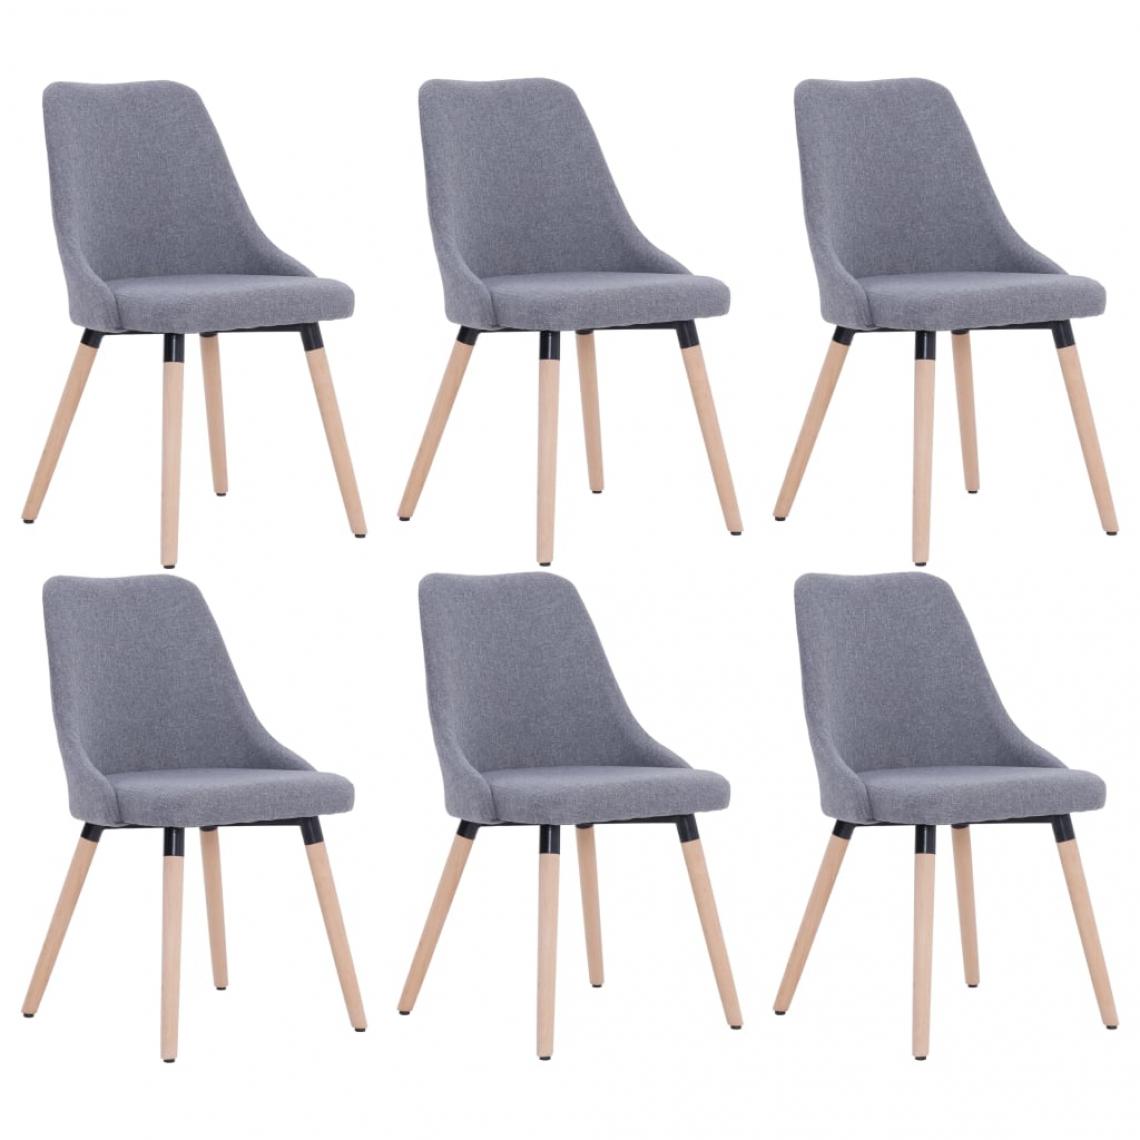 Decoshop26 - Lot de 6 chaises de salle à manger cuisine style scandinave en tissu gris clair CDS022418 - Chaises